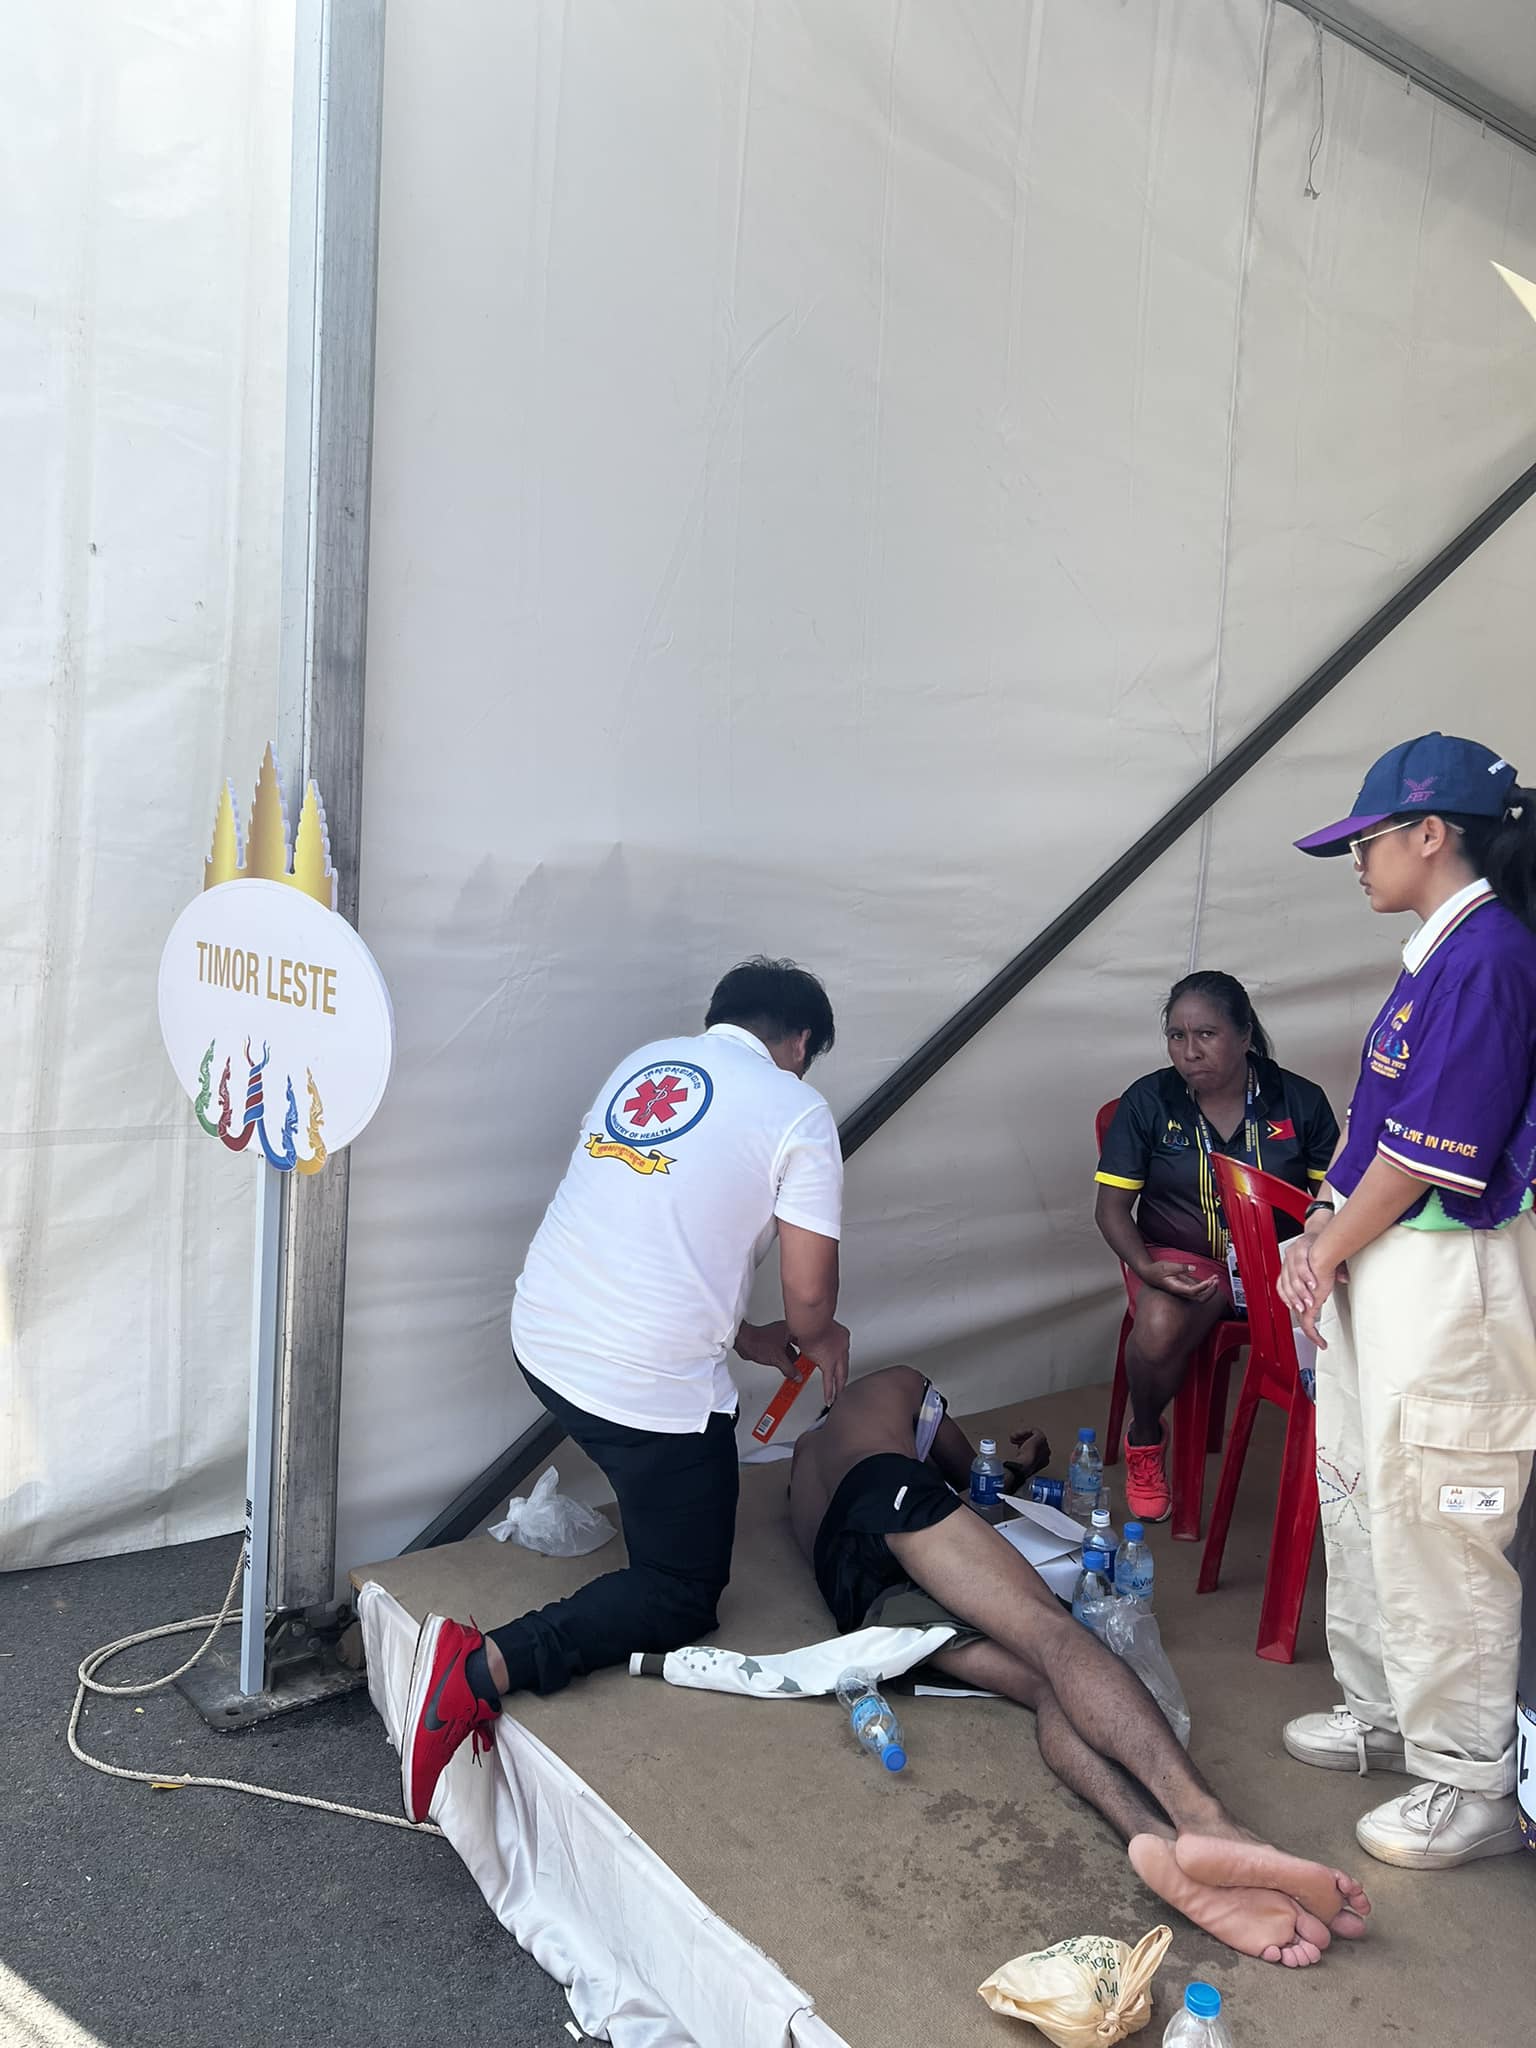 VĐV marathon Timor Leste ngất xỉu trong lều sau khi cán đích ở vị trí thứ 8. Ảnh: FBNV